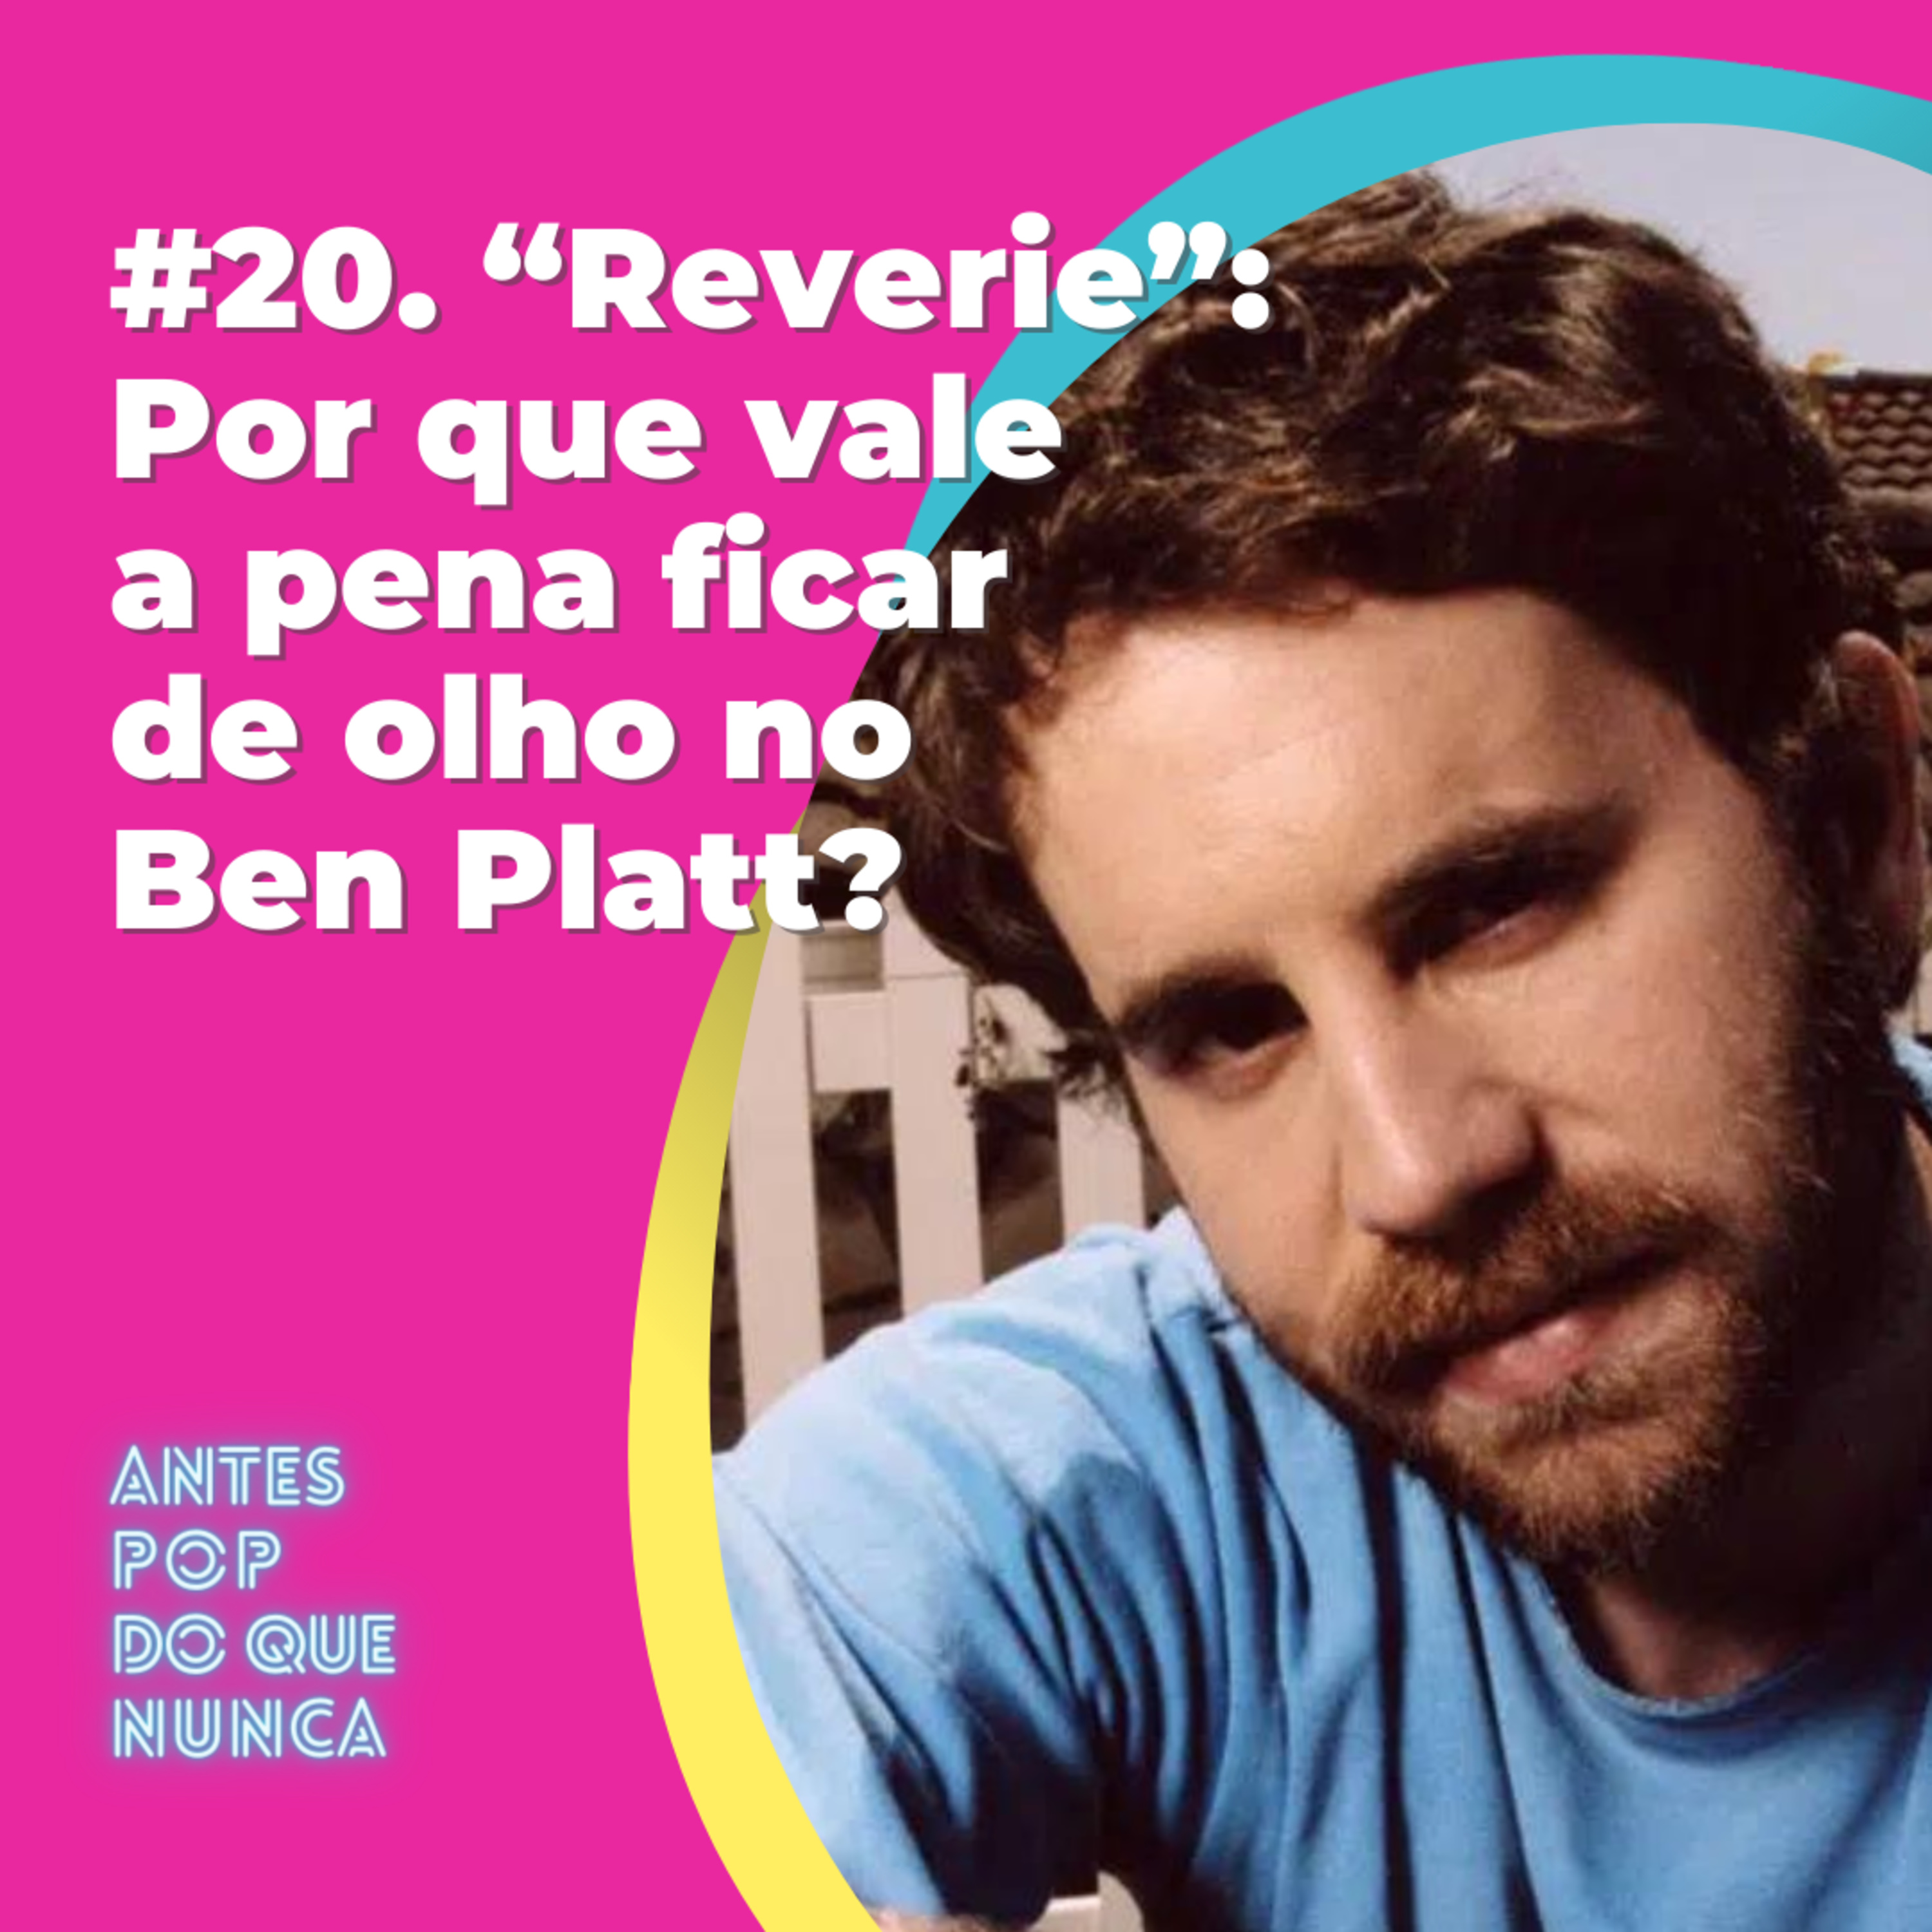 #20. “Reverie”: Por que vale a pena ficar de olho no Ben Platt?